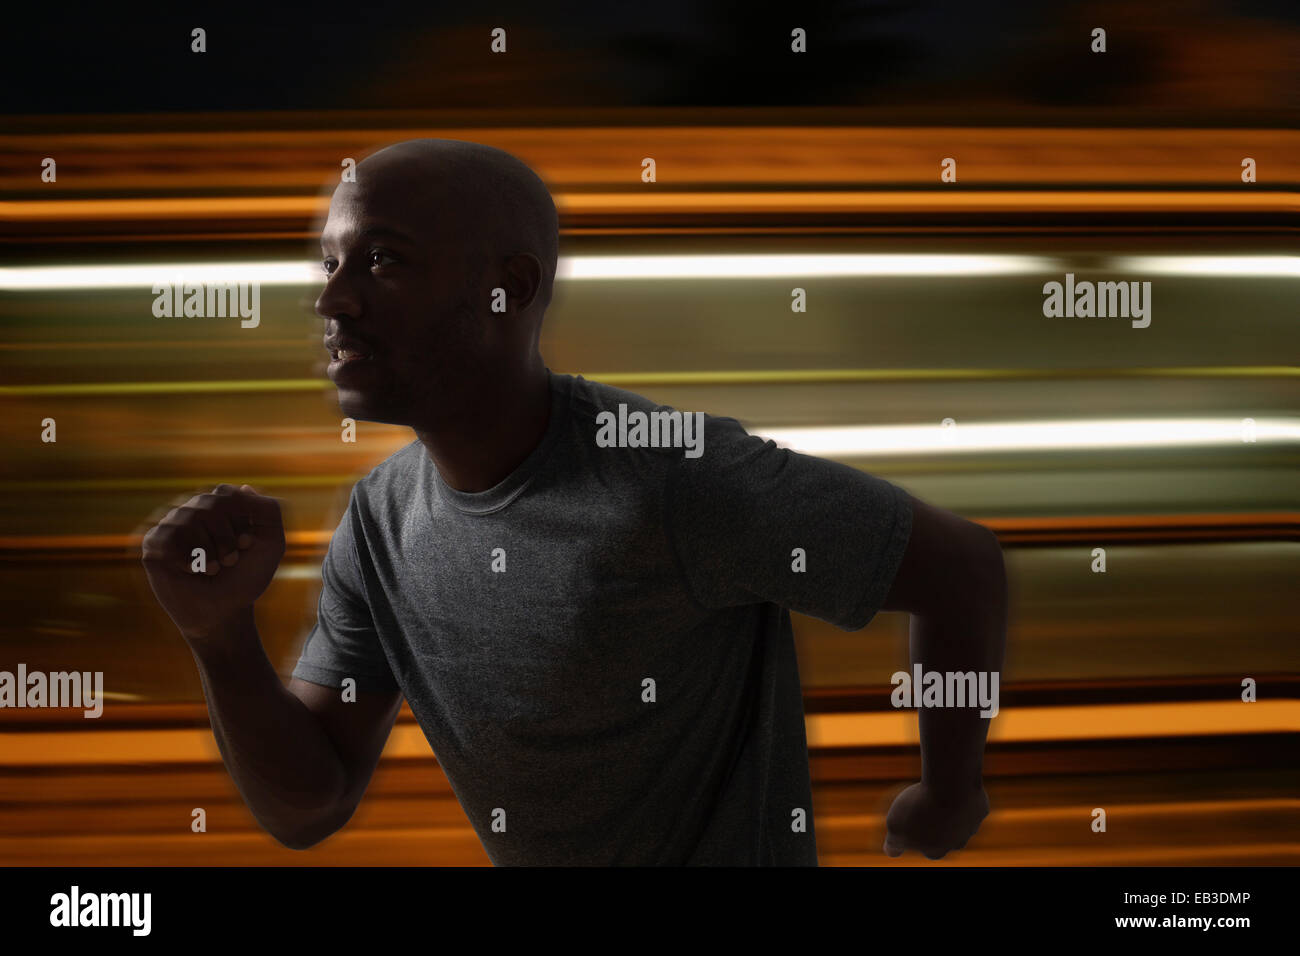 Blurred view of Black man running Stock Photo